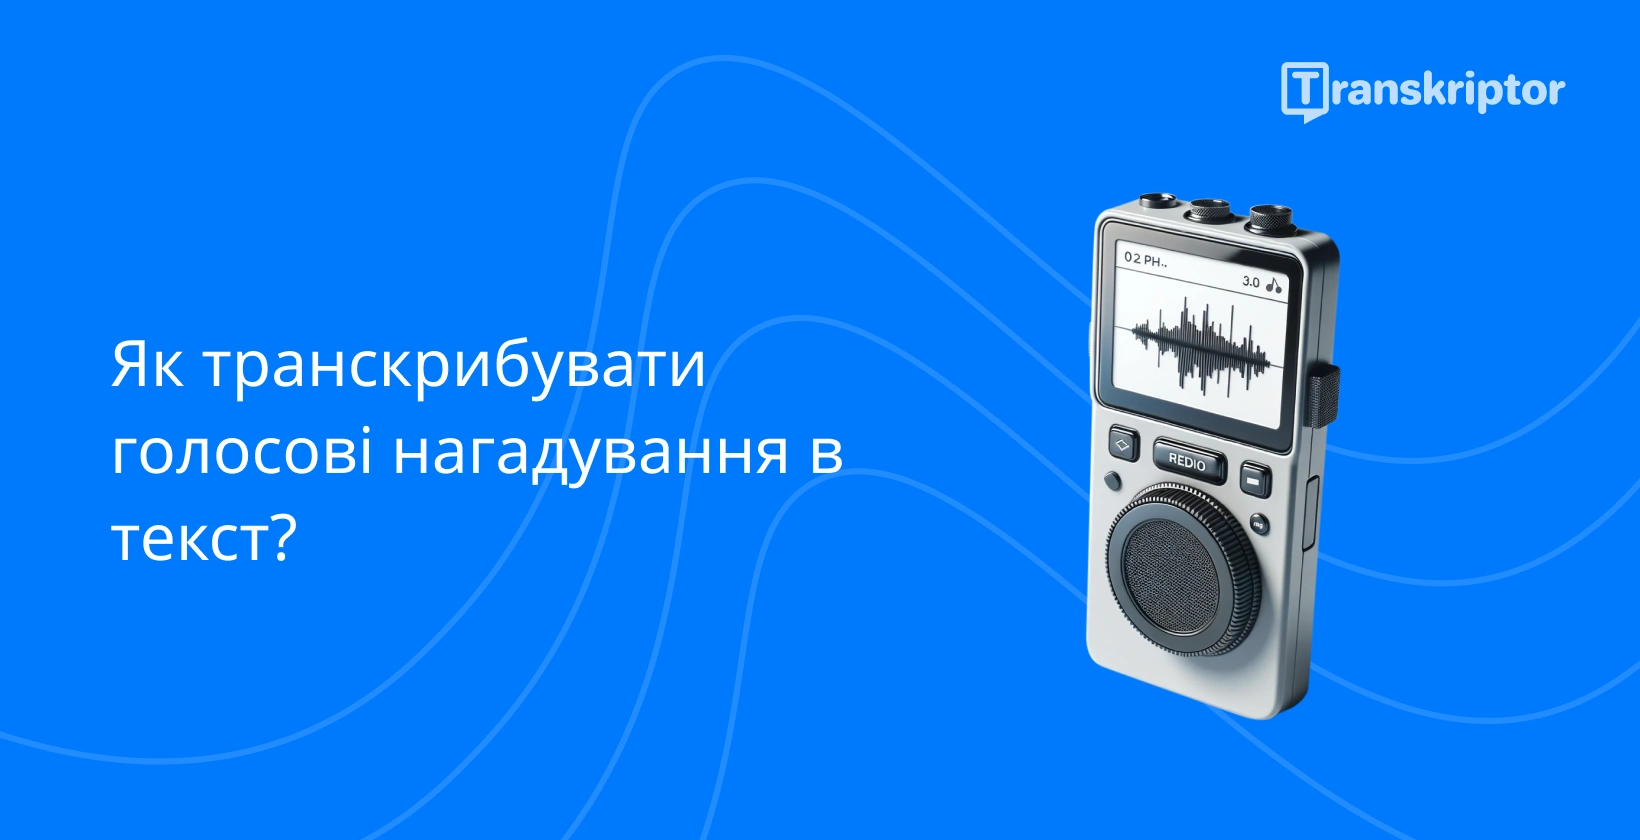 Транскрибуйте голосові нотатки за допомогою цифрового диктофона, що відображає звукові хвилі на яскравому синьому тлі.